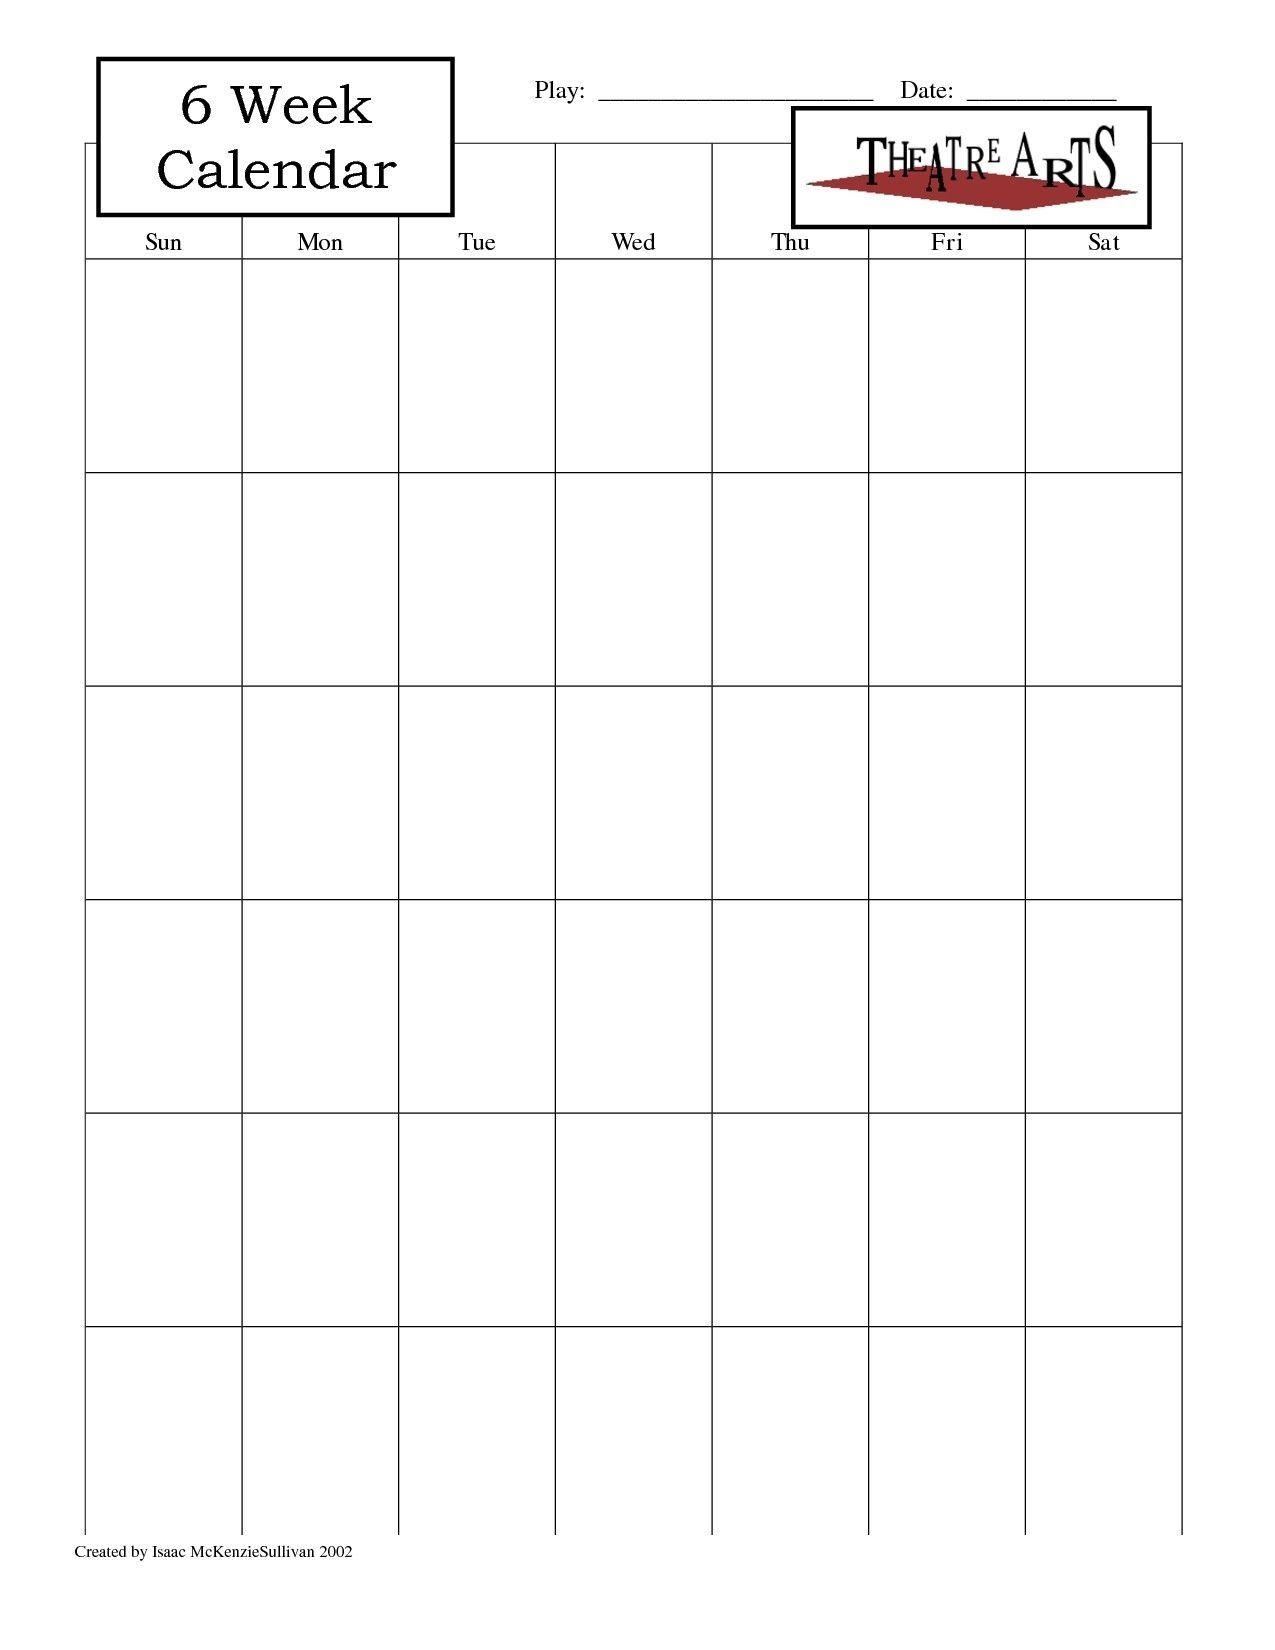 Printable Calendar 6 Week In 2020 | Printable Blank Calendar